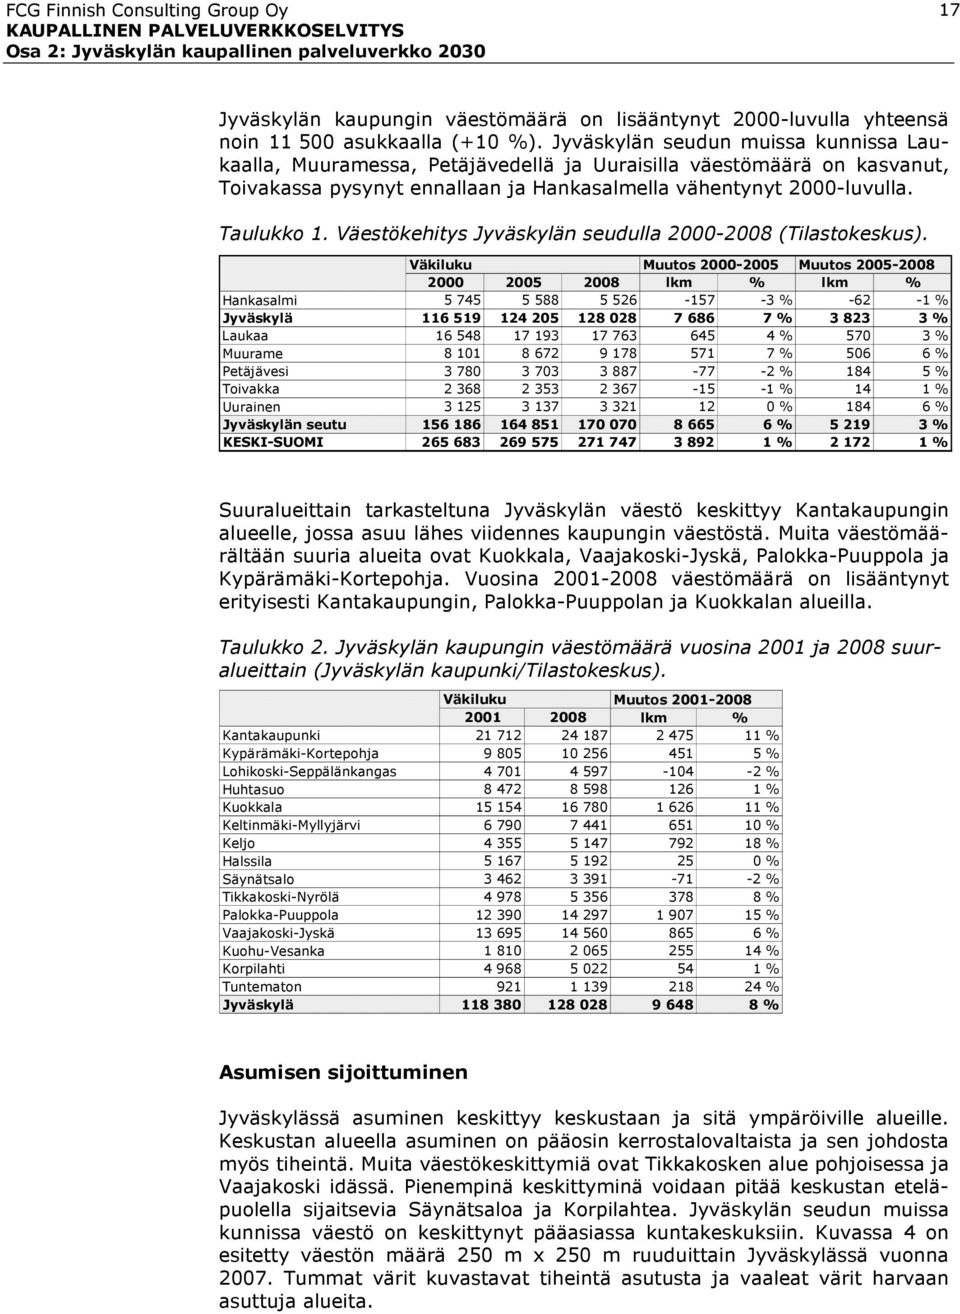 Väestökehitys Jyväskylän seudulla 2000-2008 (Tilastokeskus).